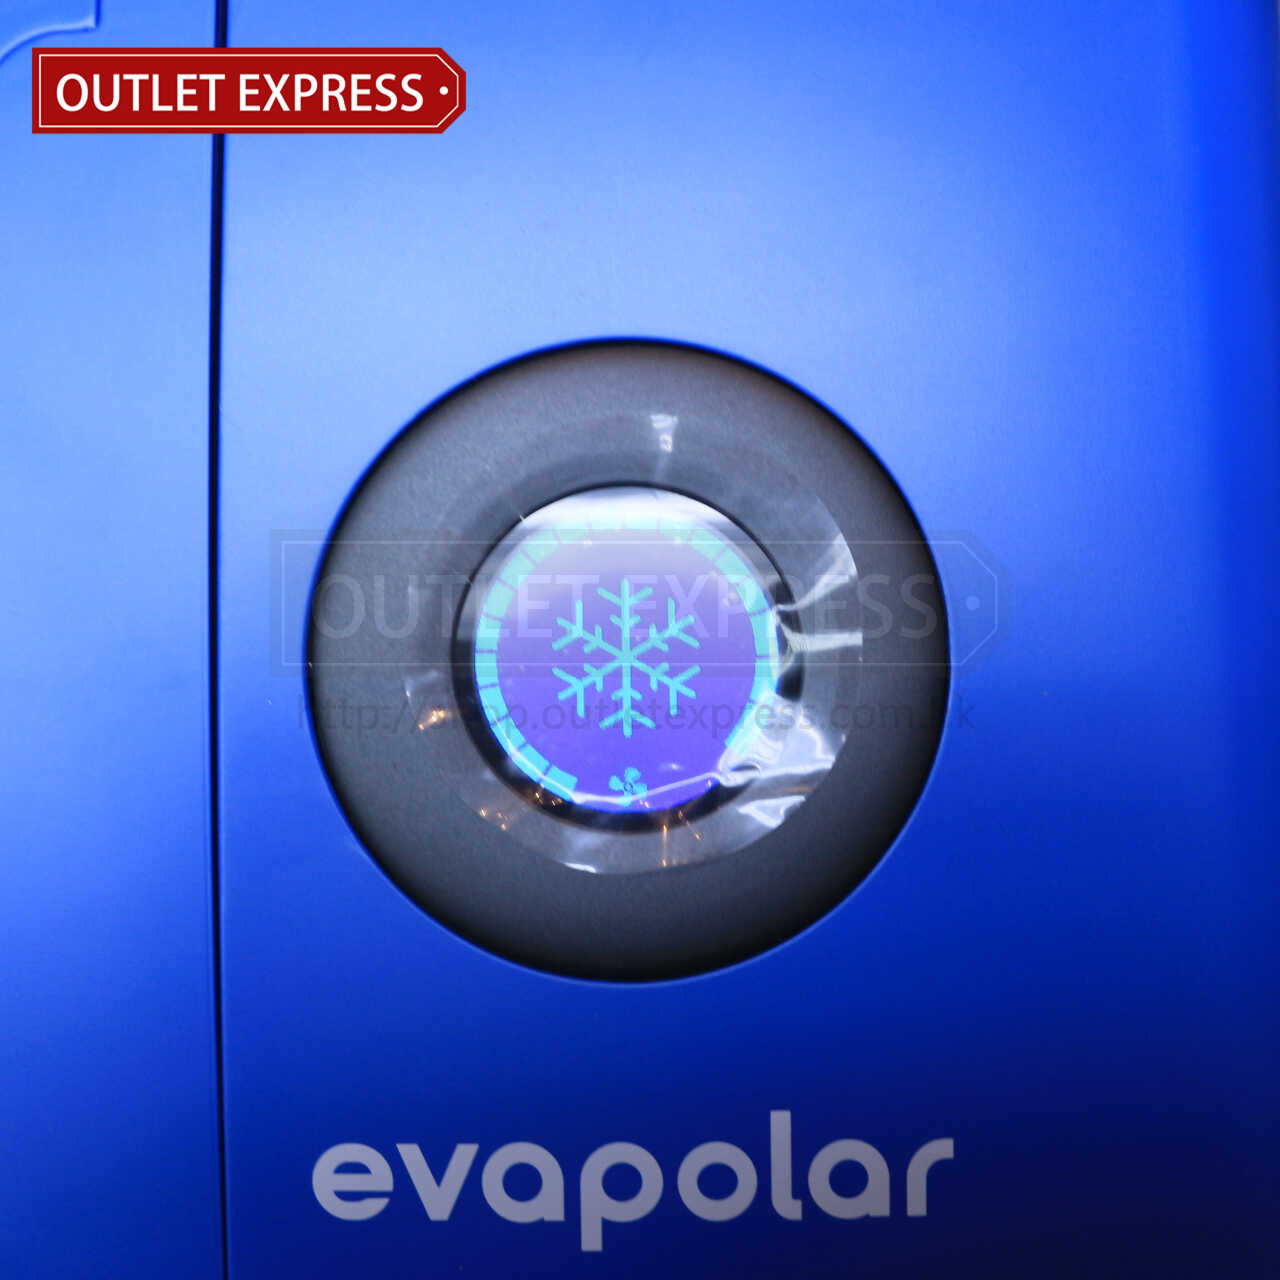 Evapolar 小型流動冷氣機功能設定- Outlet Express HK生活百貨城實拍相片